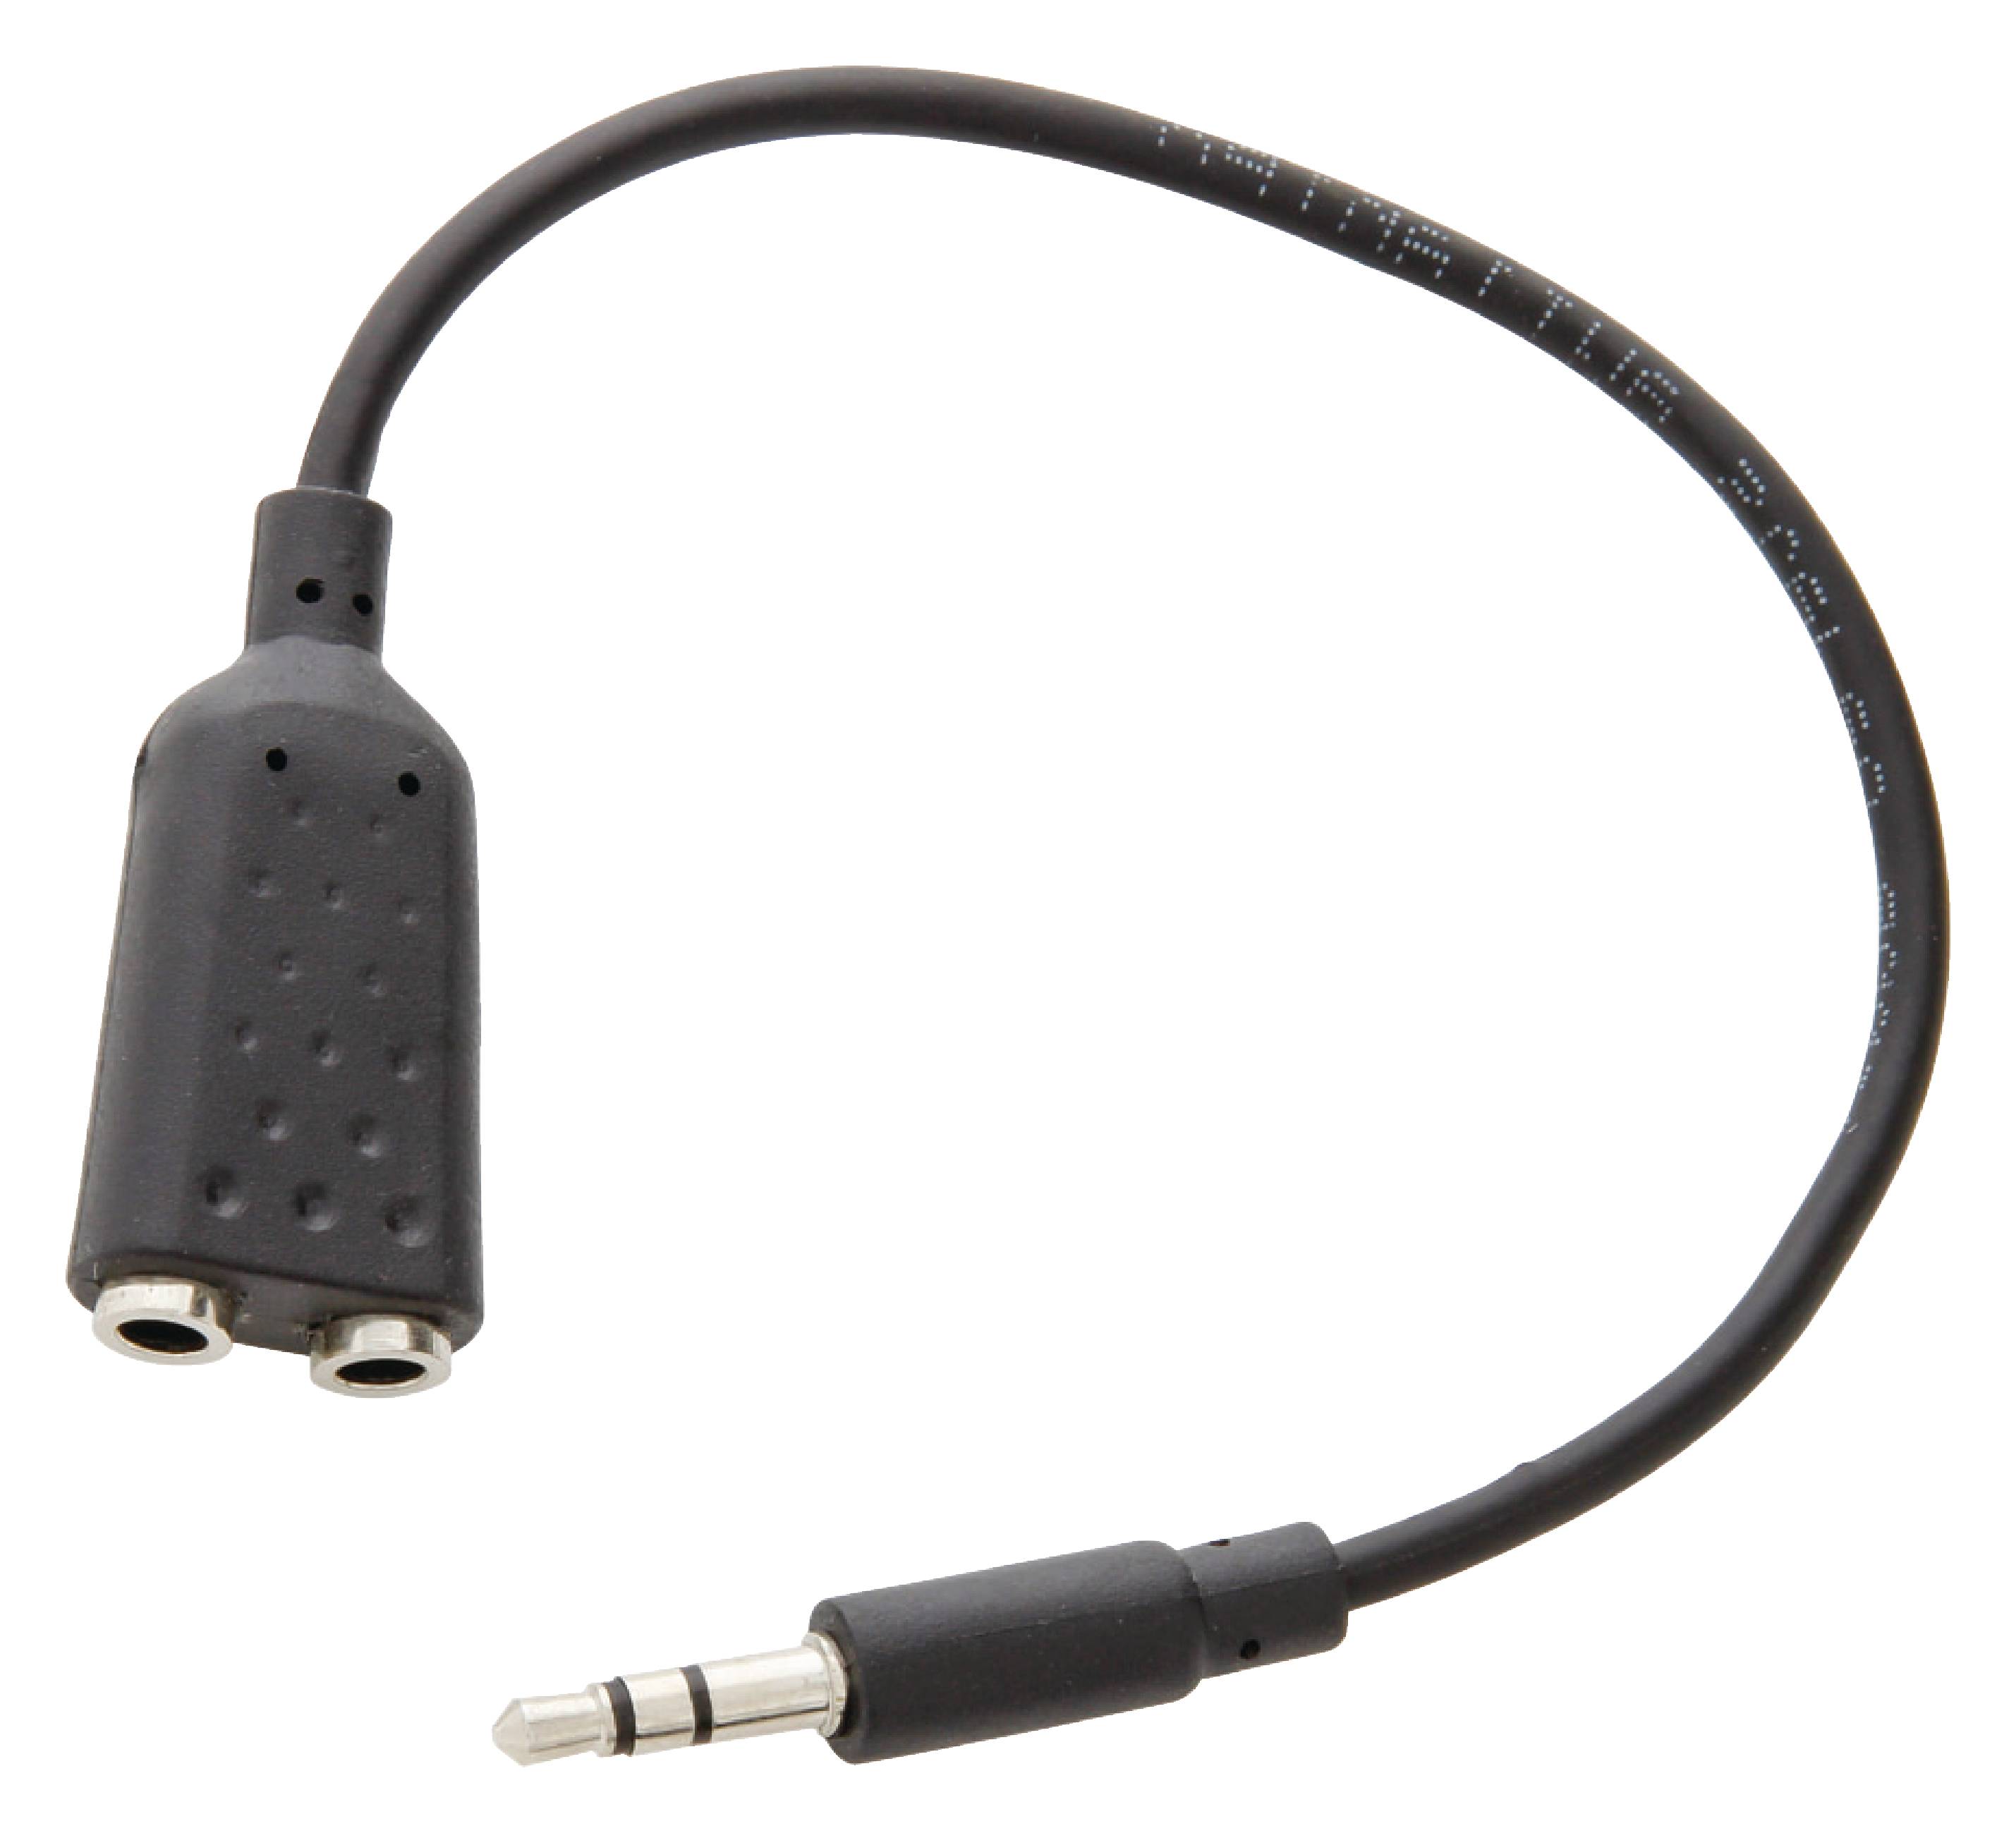 Splitter cablu adaptor audio stereo Jack 3.5mm tata - 2x 3.5mm Jack mama 0.2m Valueline